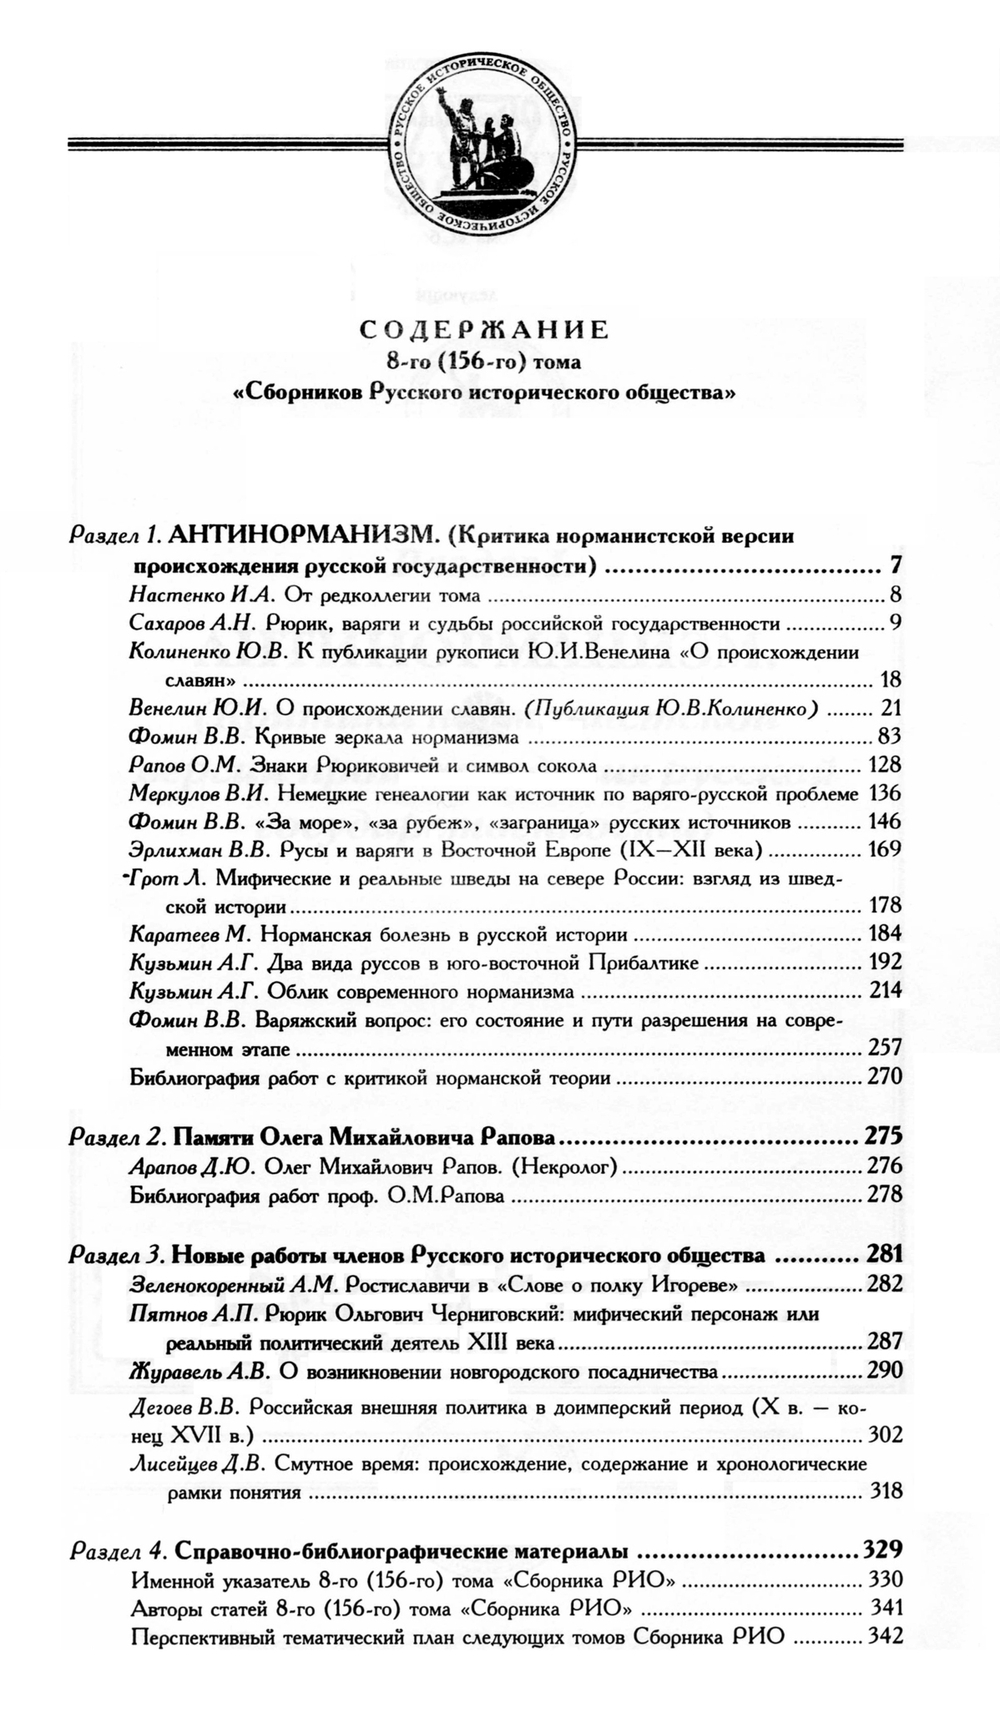 Сборник Русского исторического общества. Т. 8 (156). Антинорманизм